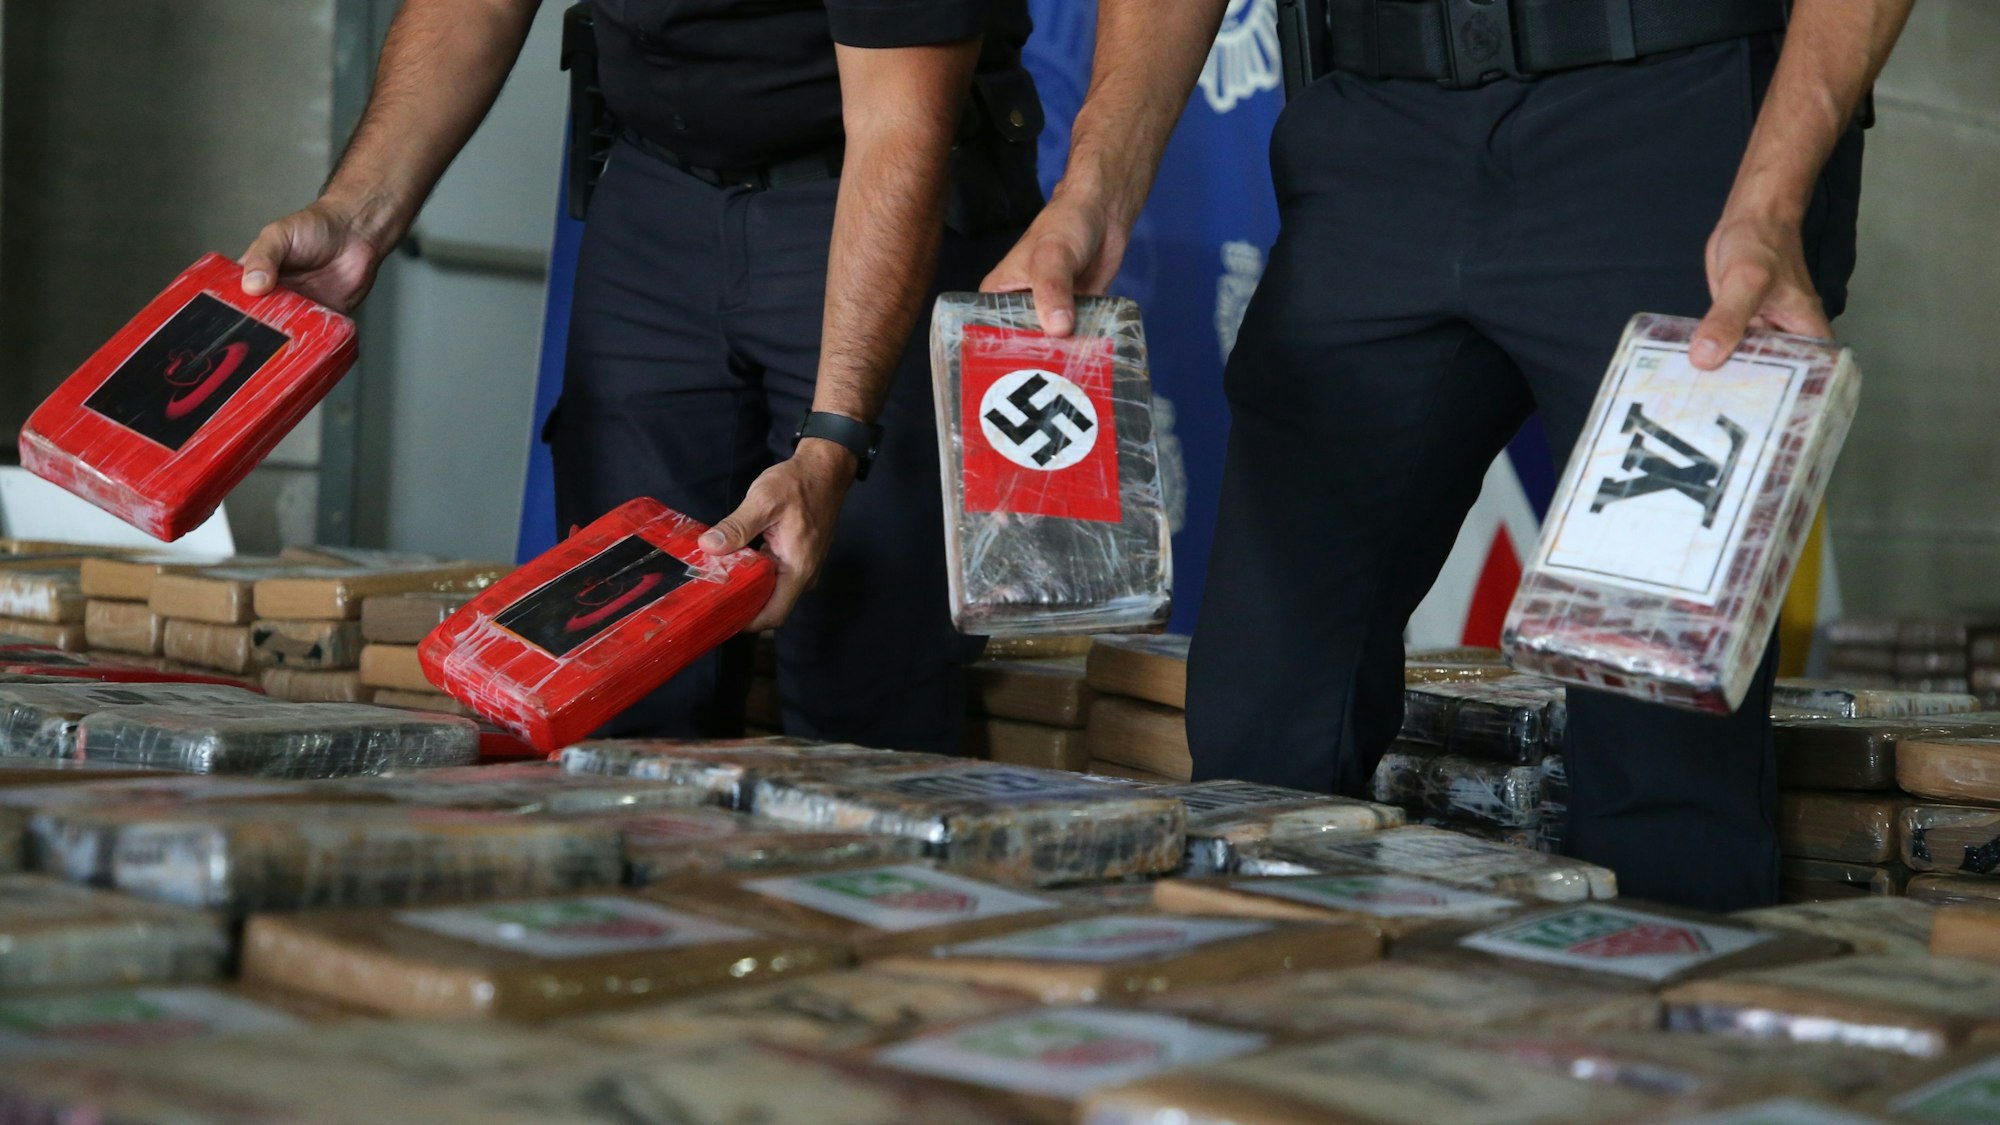 Während einer Pressekonferenz werden von der Polizei beschlagnahmte Kokainpakete gezeigt.